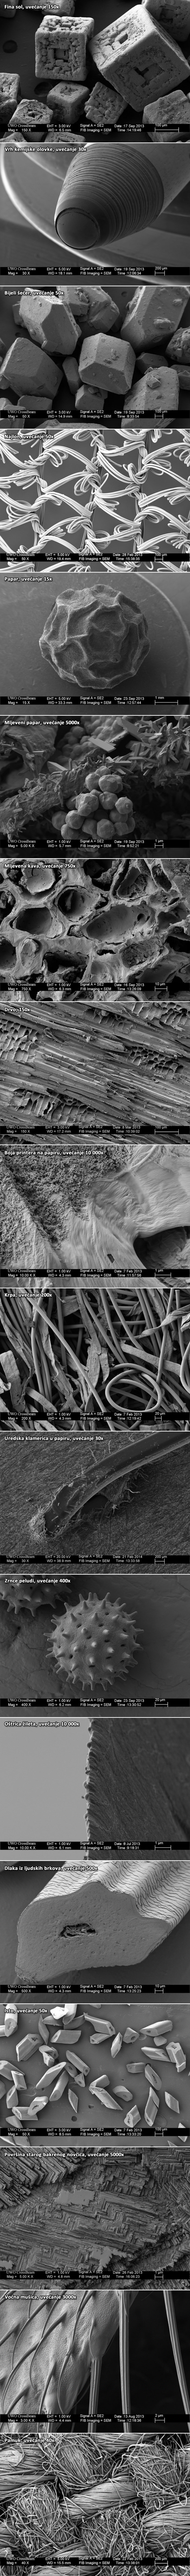 Nevjerojatni prizori nevidljivog svijeta pokazuju kako stvari izgledaju pod mikroskopom